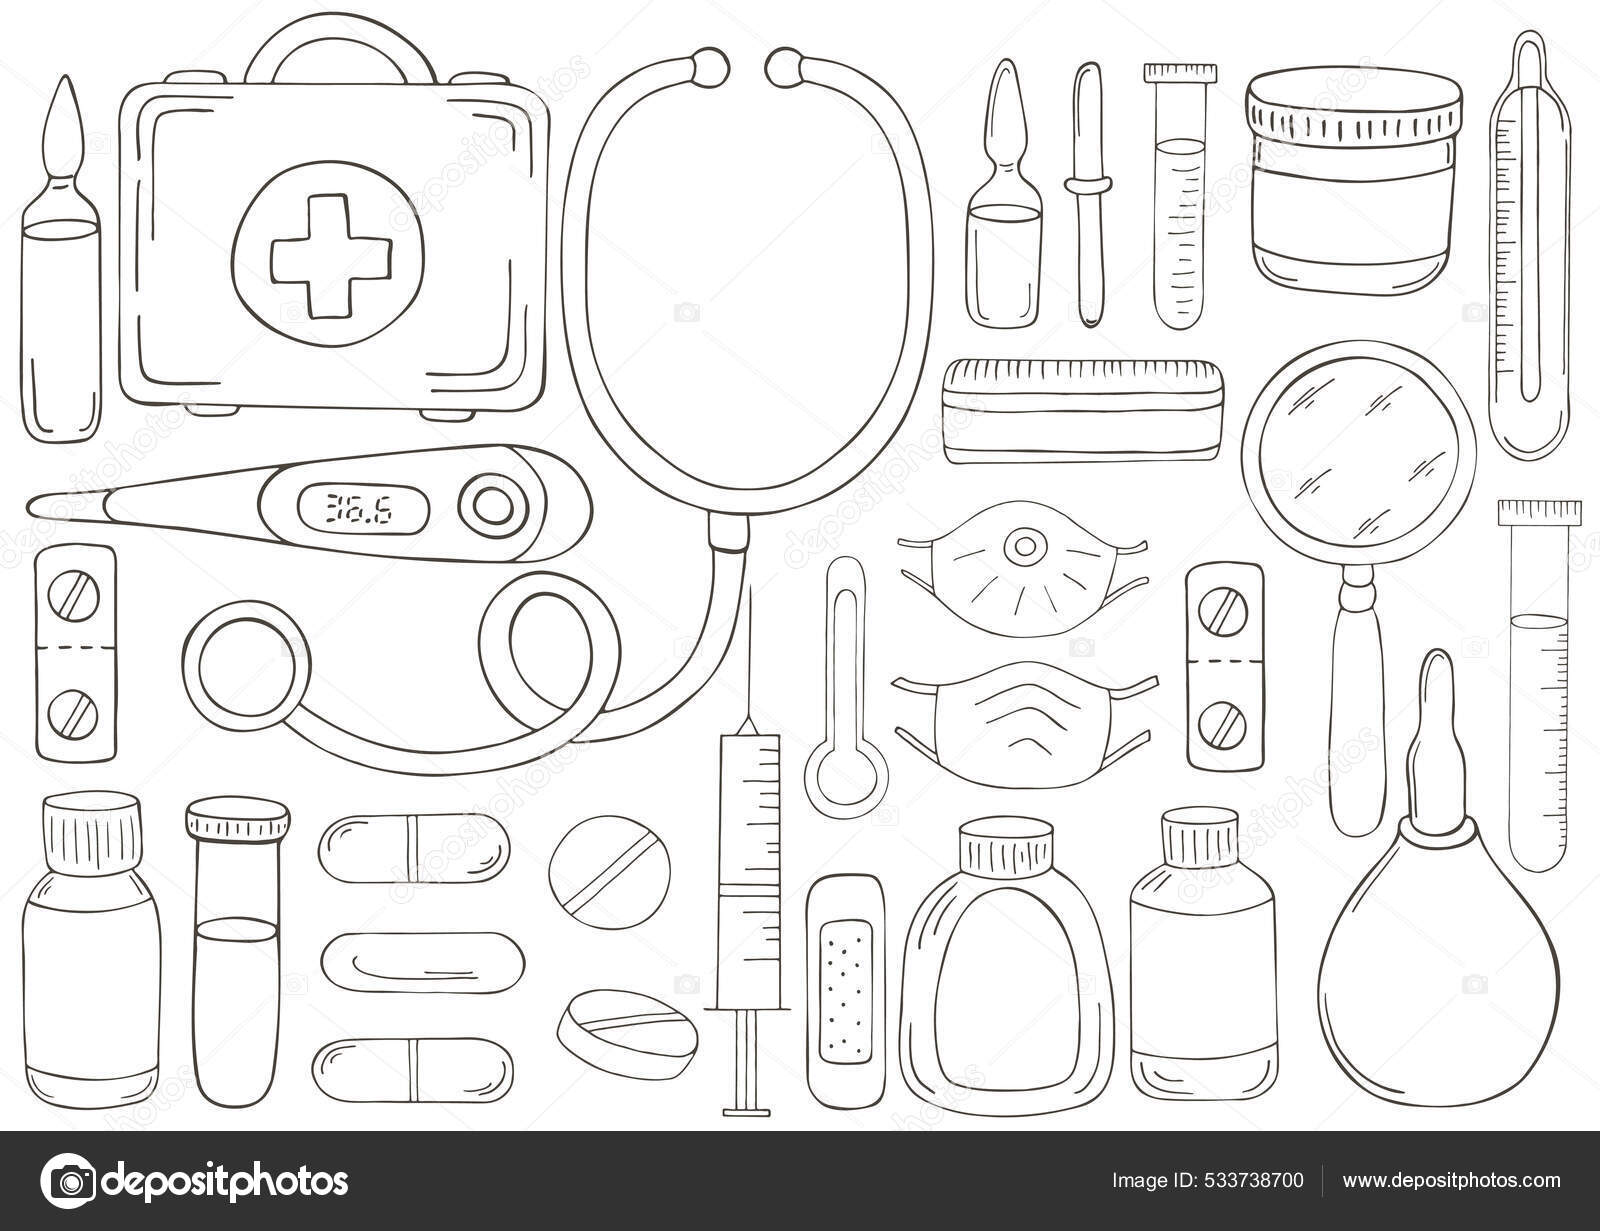 Desenho de página para colorir de instrumentos médicos. Logotipo médico  imagem vetorial de Oleon17© 114576824